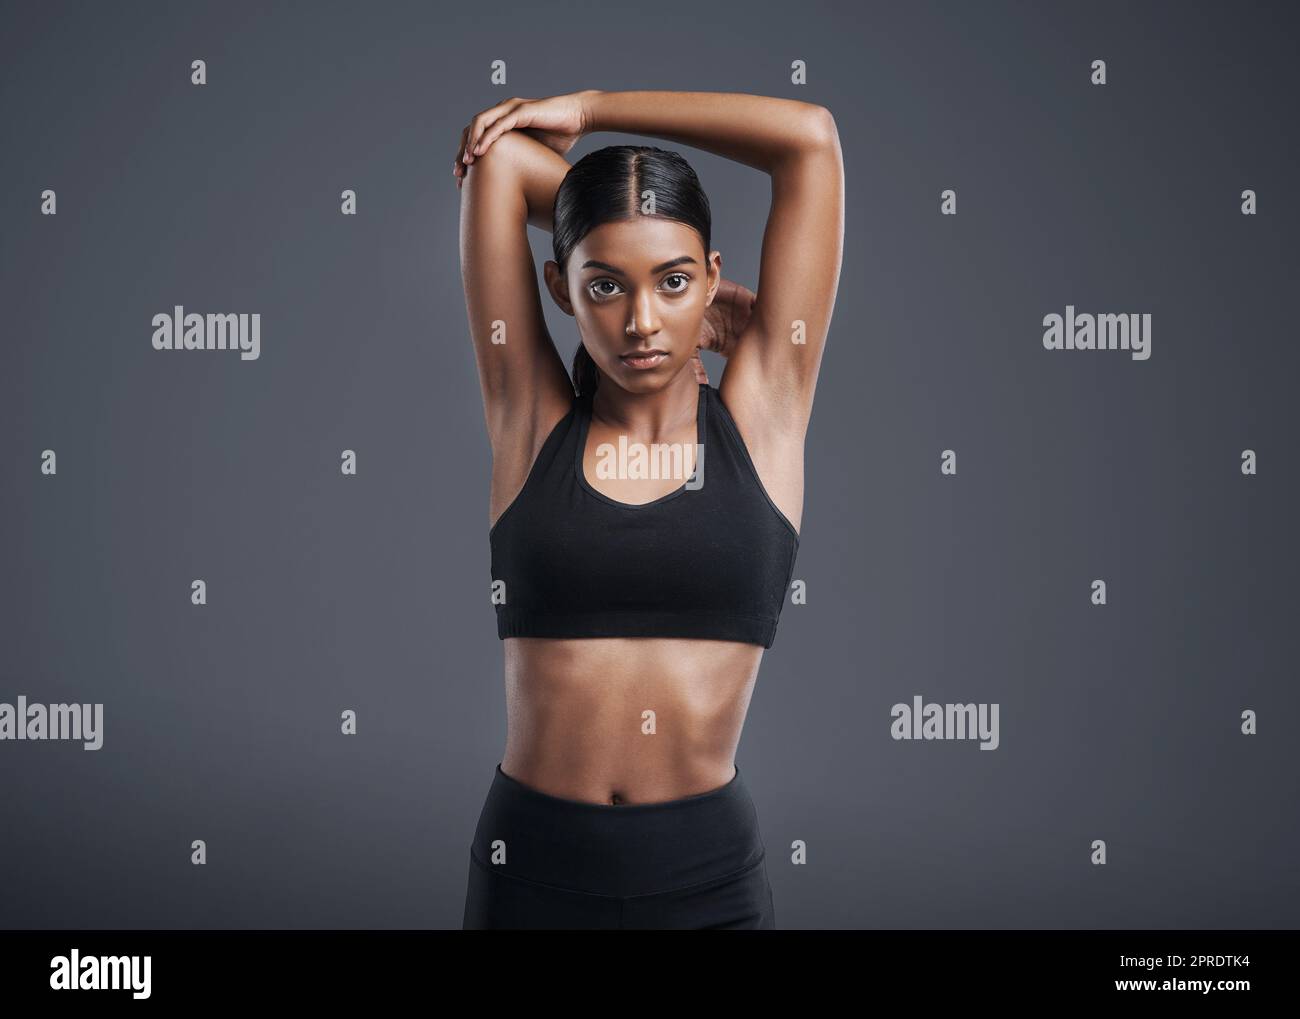 Bleiben Sie diszipliniert und Sie werden Ergebnisse sehen. Studioportrait einer sportlichen jungen Frau, die ihre Arme vor einem grauen Hintergrund ausstreckt. Stockfoto